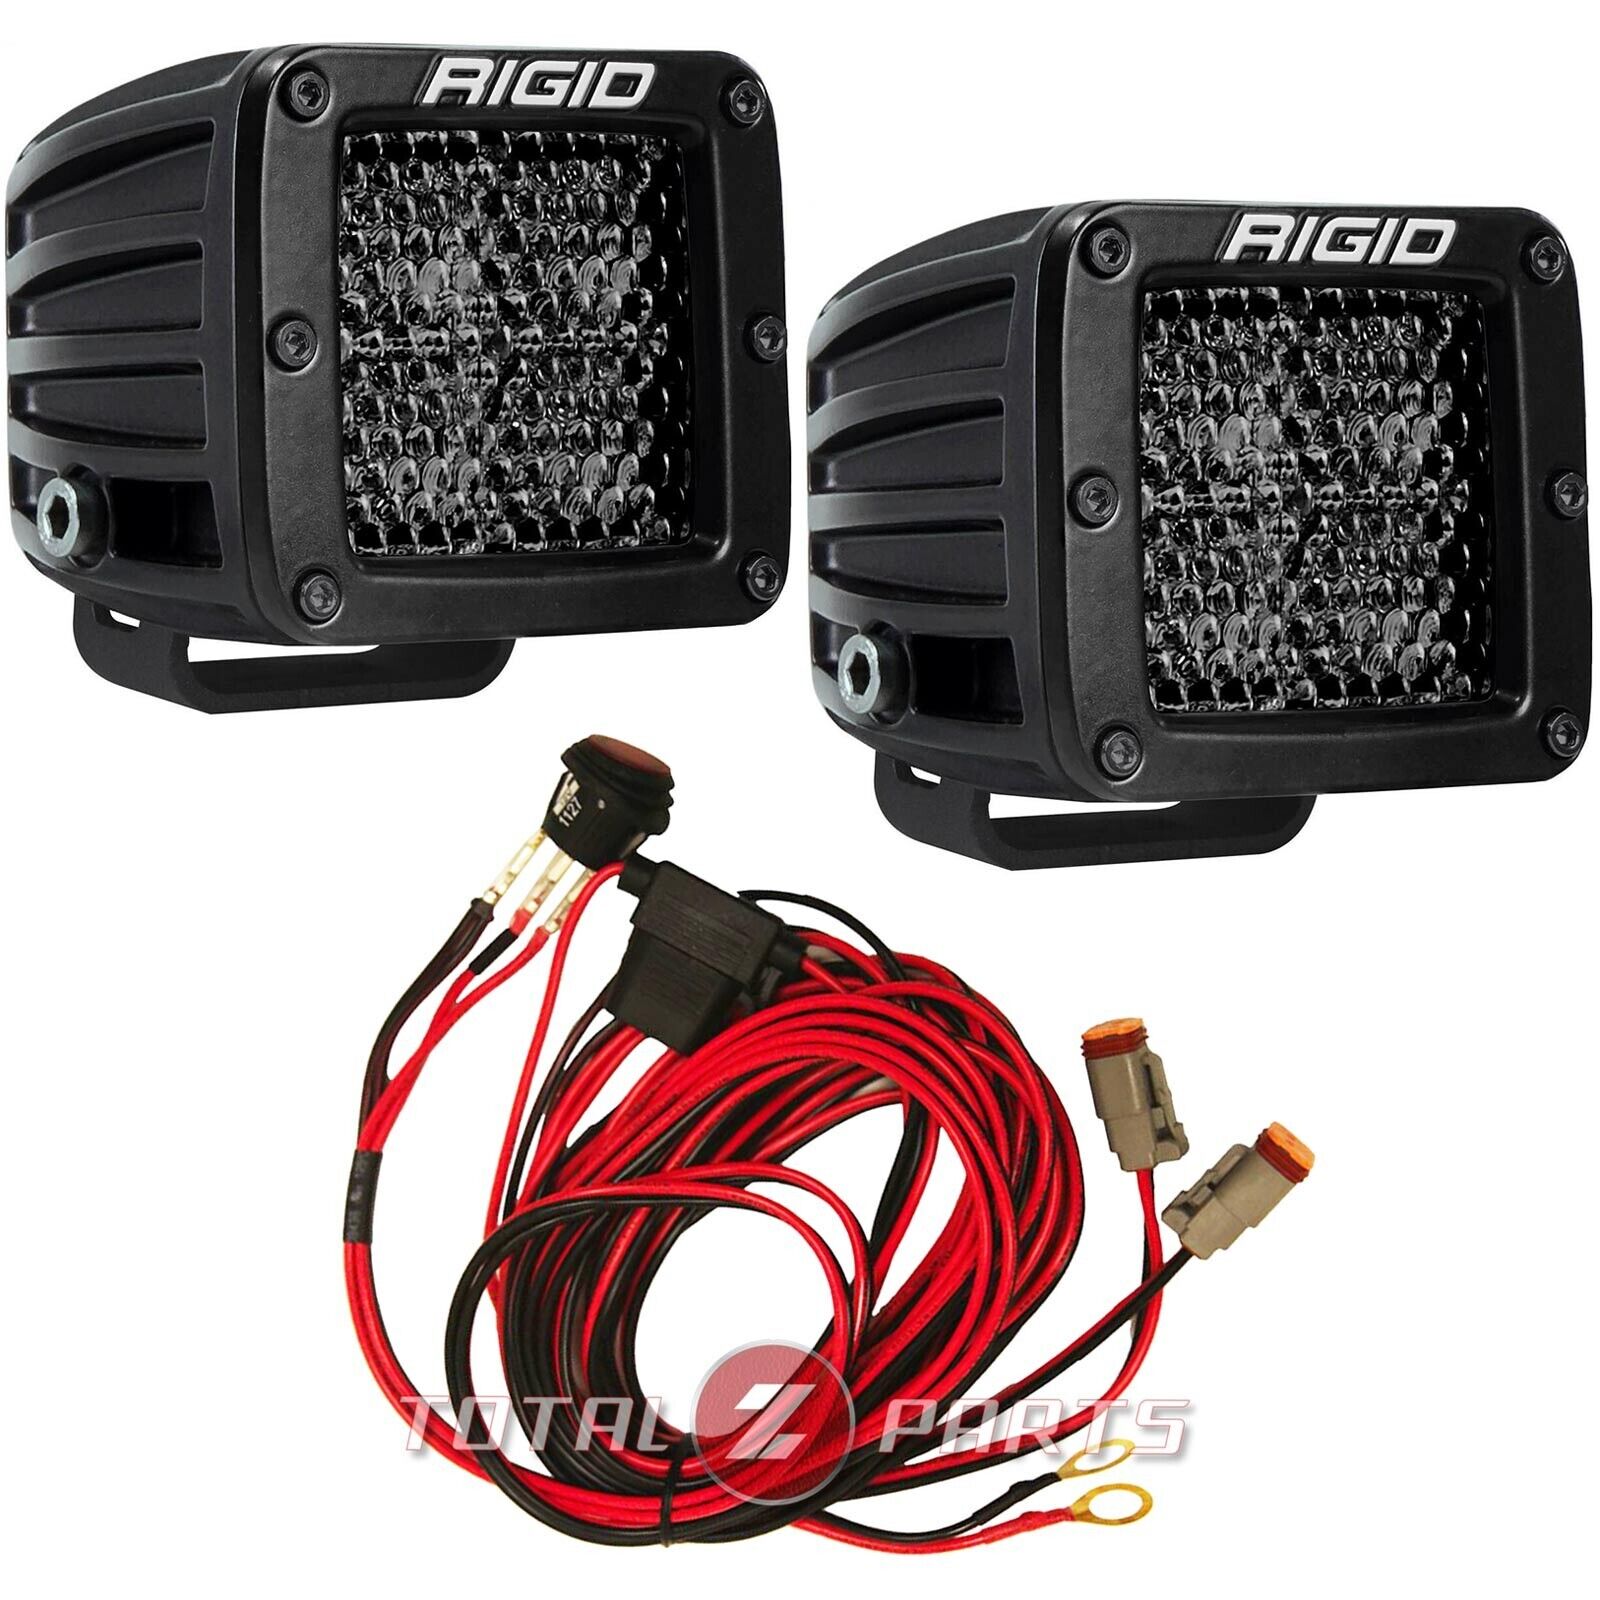 Rigid® D-Series Pro Spot Diffused Midnight LED Light Pods Pair w/Harness